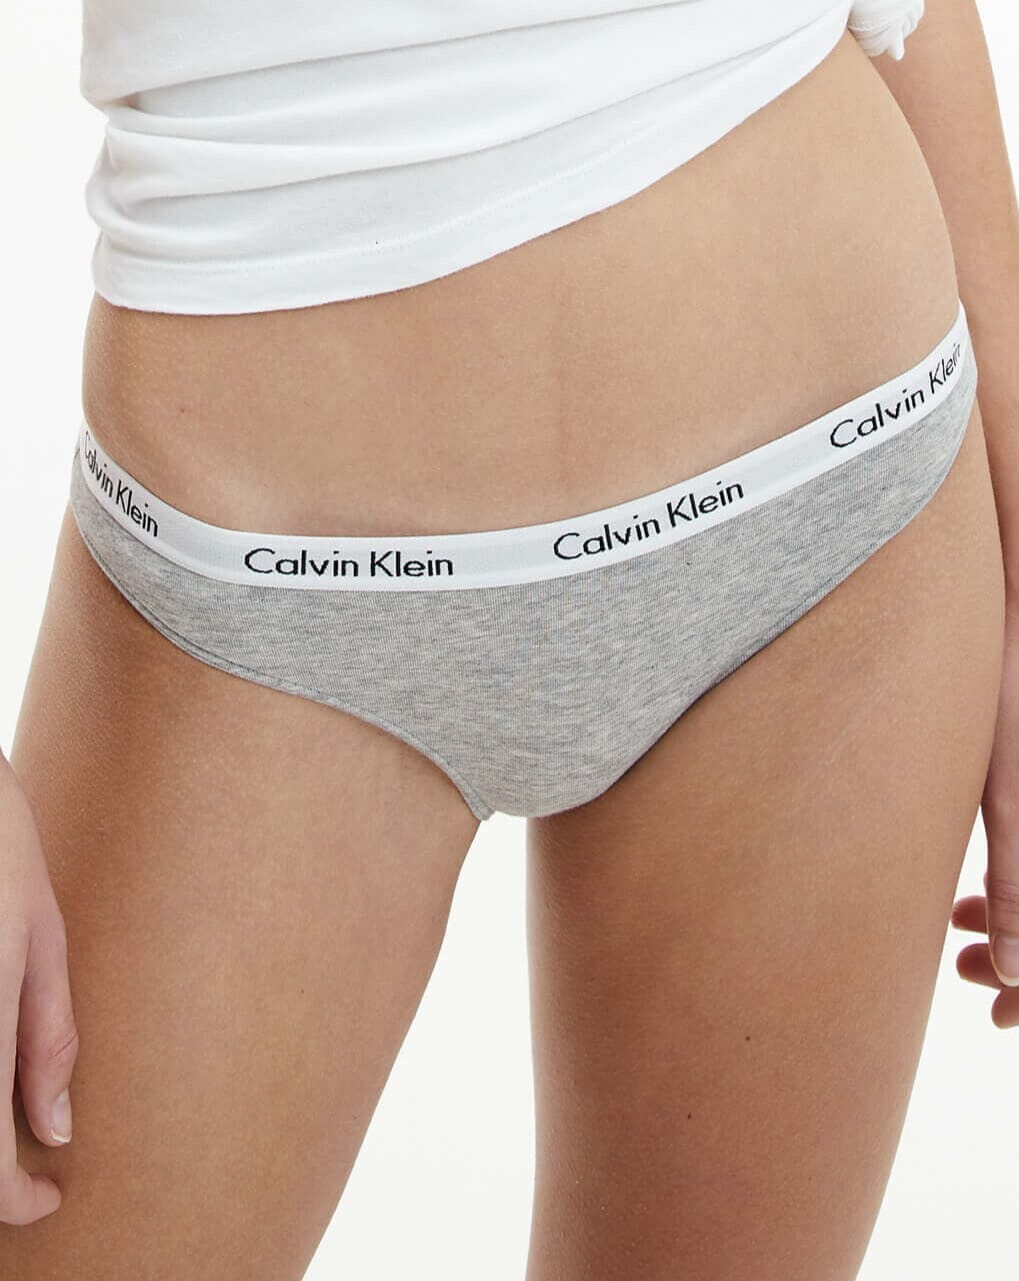 Calvin Klein Underwear CAROUSEL THONG - Thong - black 